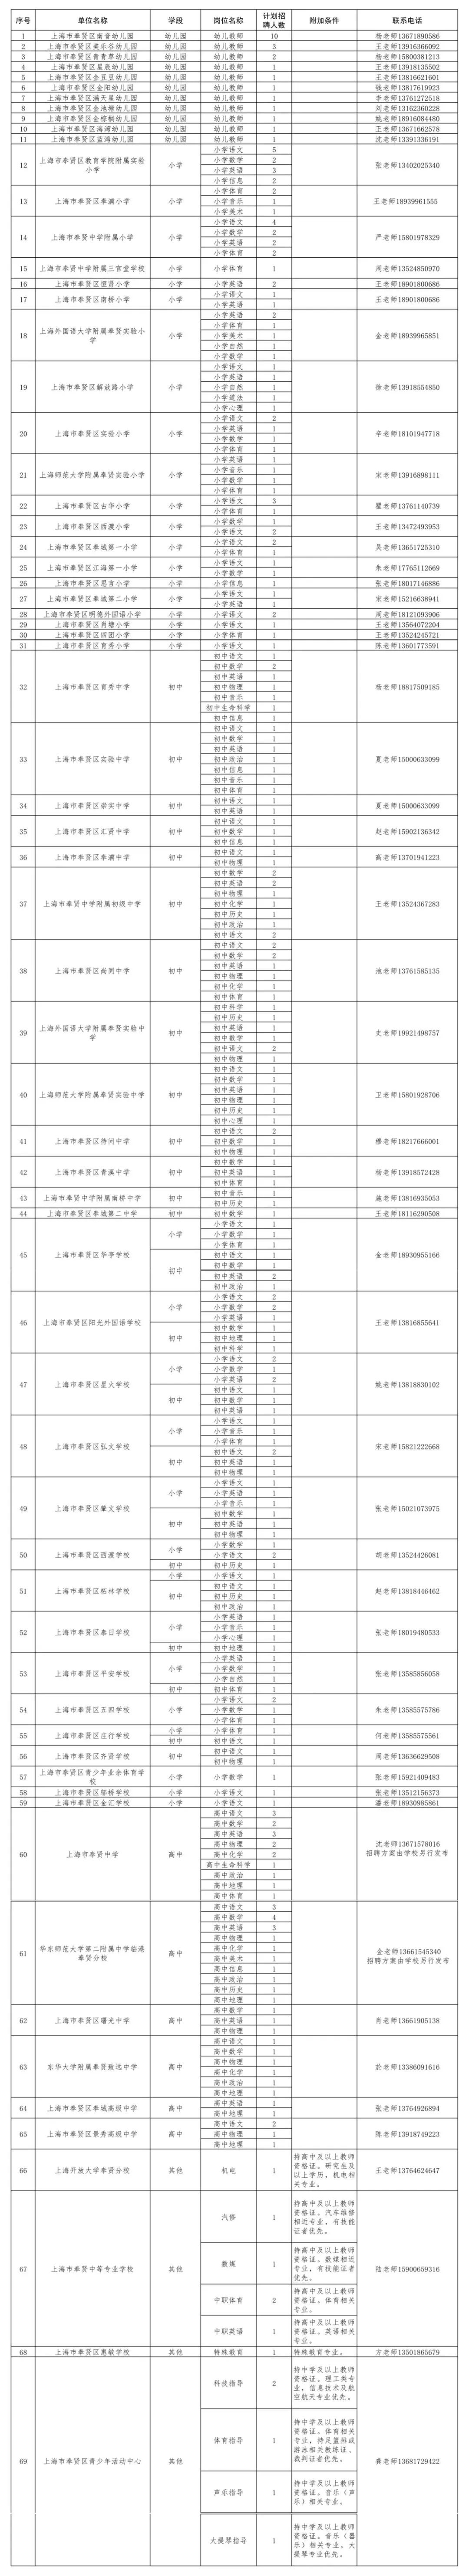 【就业】奉贤区招聘281名教师,11月13日前报名